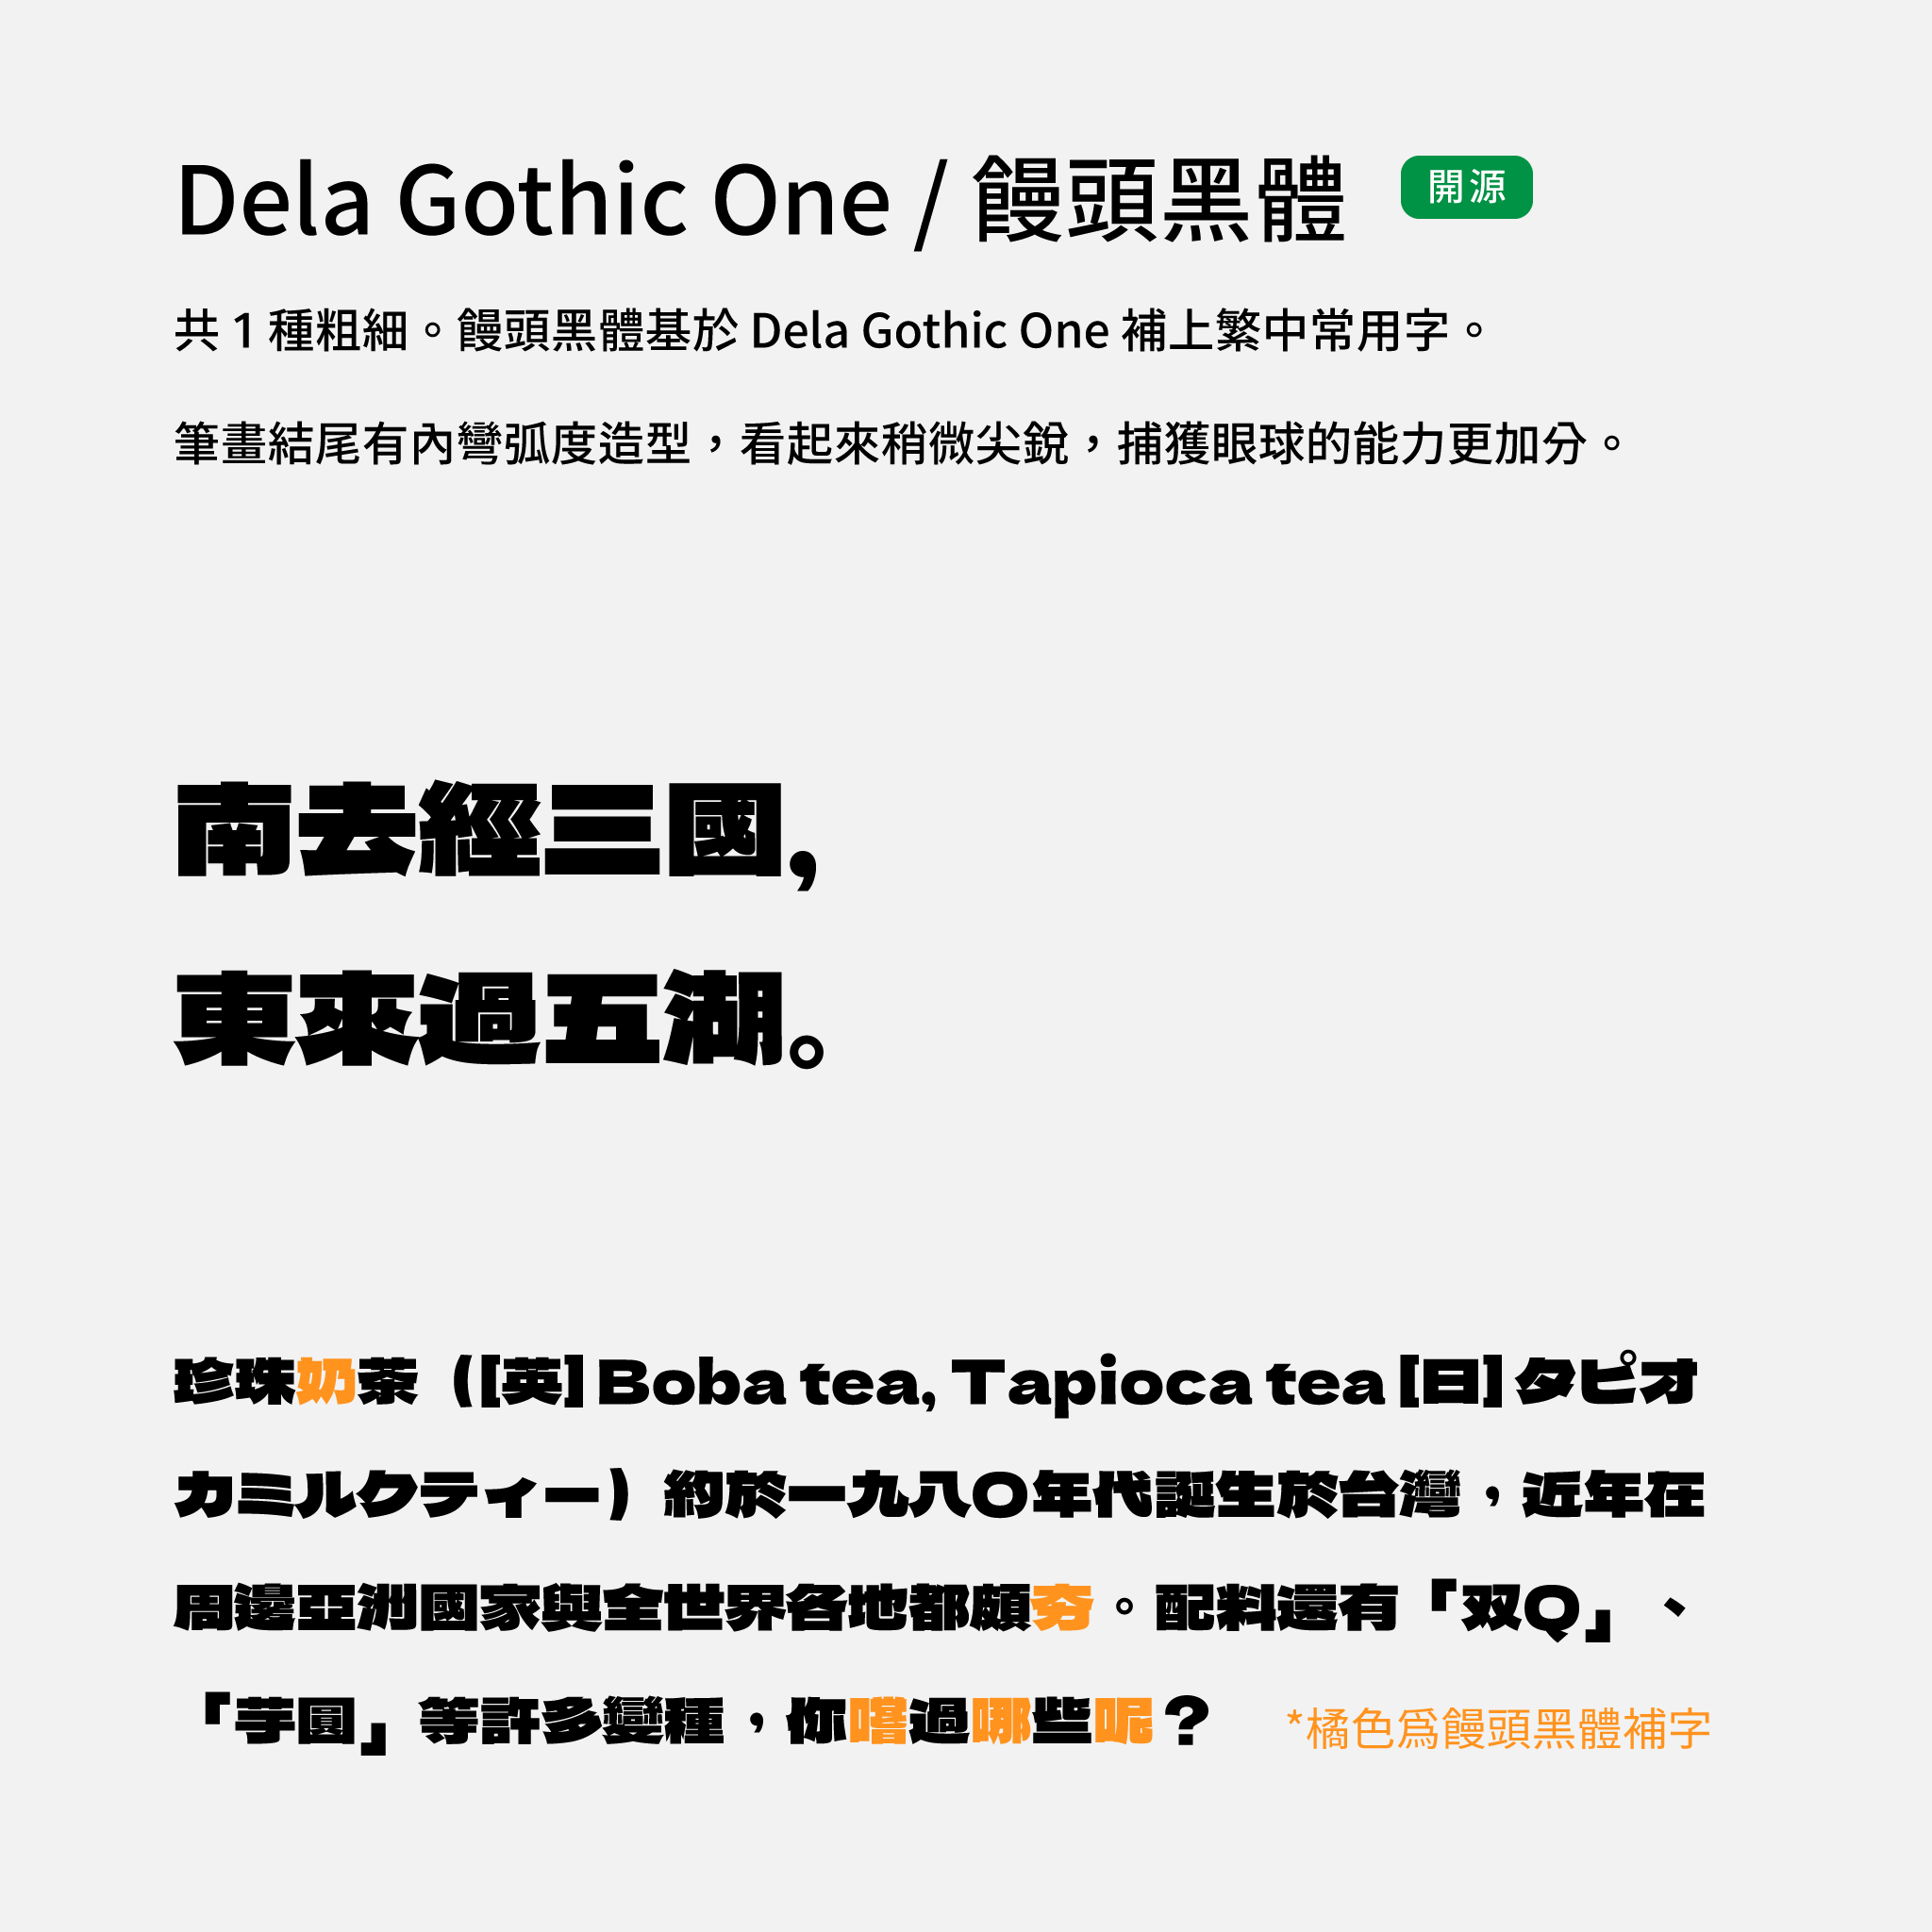 2024 推薦字體字樣展示：Dela Gothic One 與饅頭黑體。筆畫收尾有弧度，字體輪廓稍扁平，體現性格。開源字體可免費下載商用。